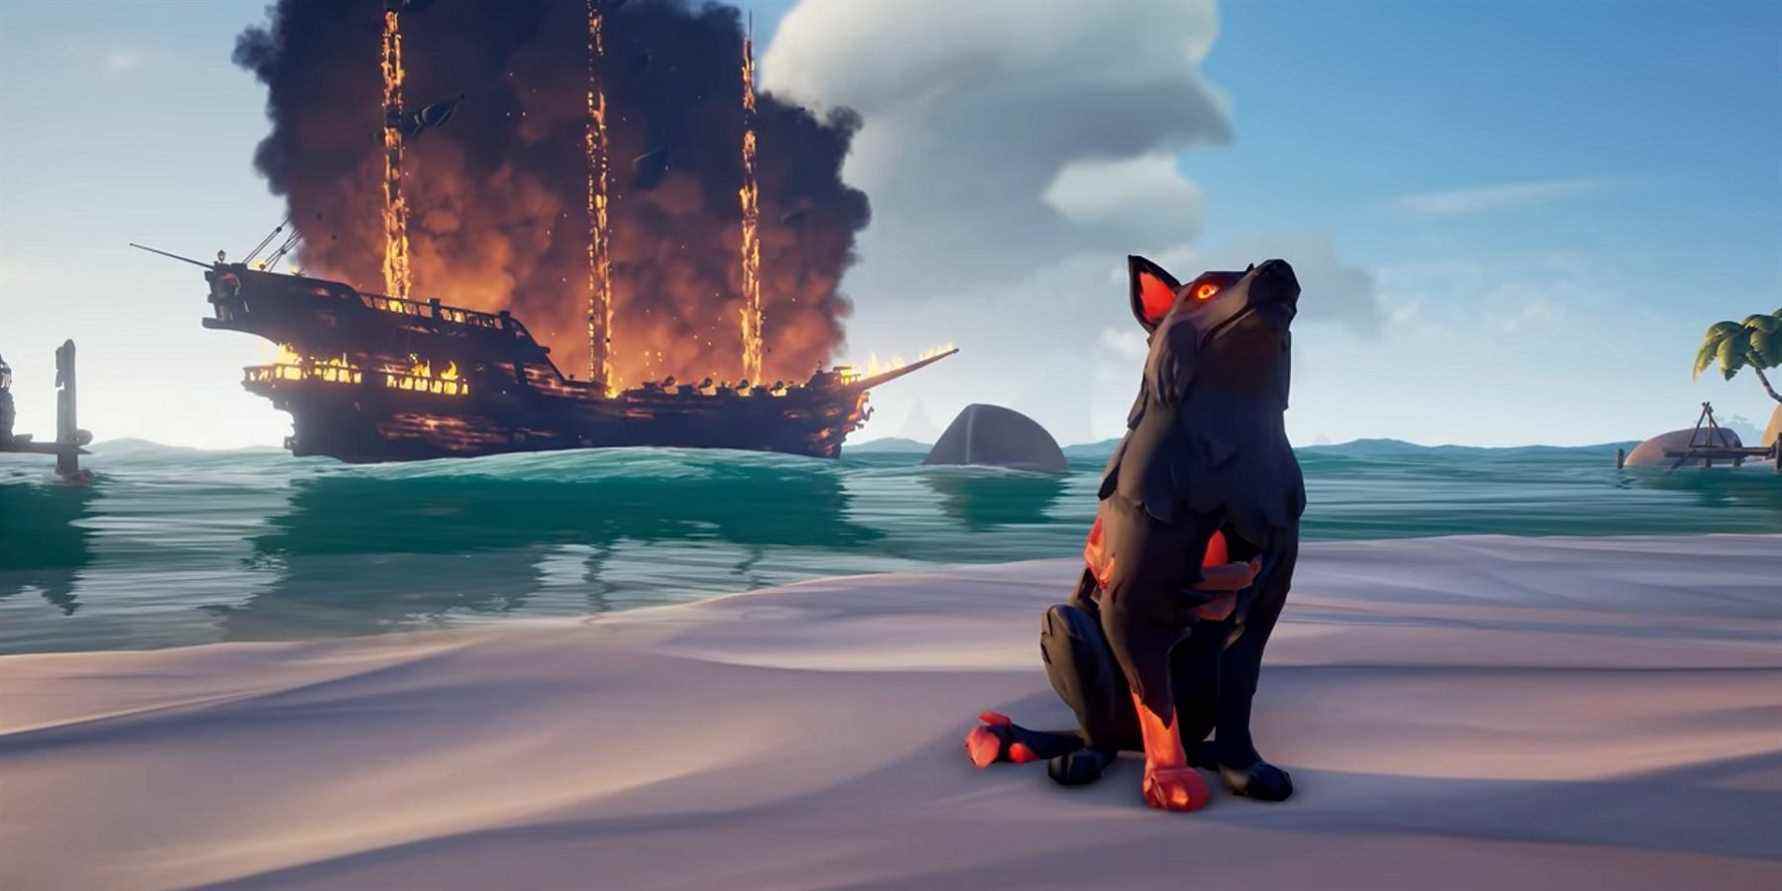 mer de voleurs chien cendré navire en feu